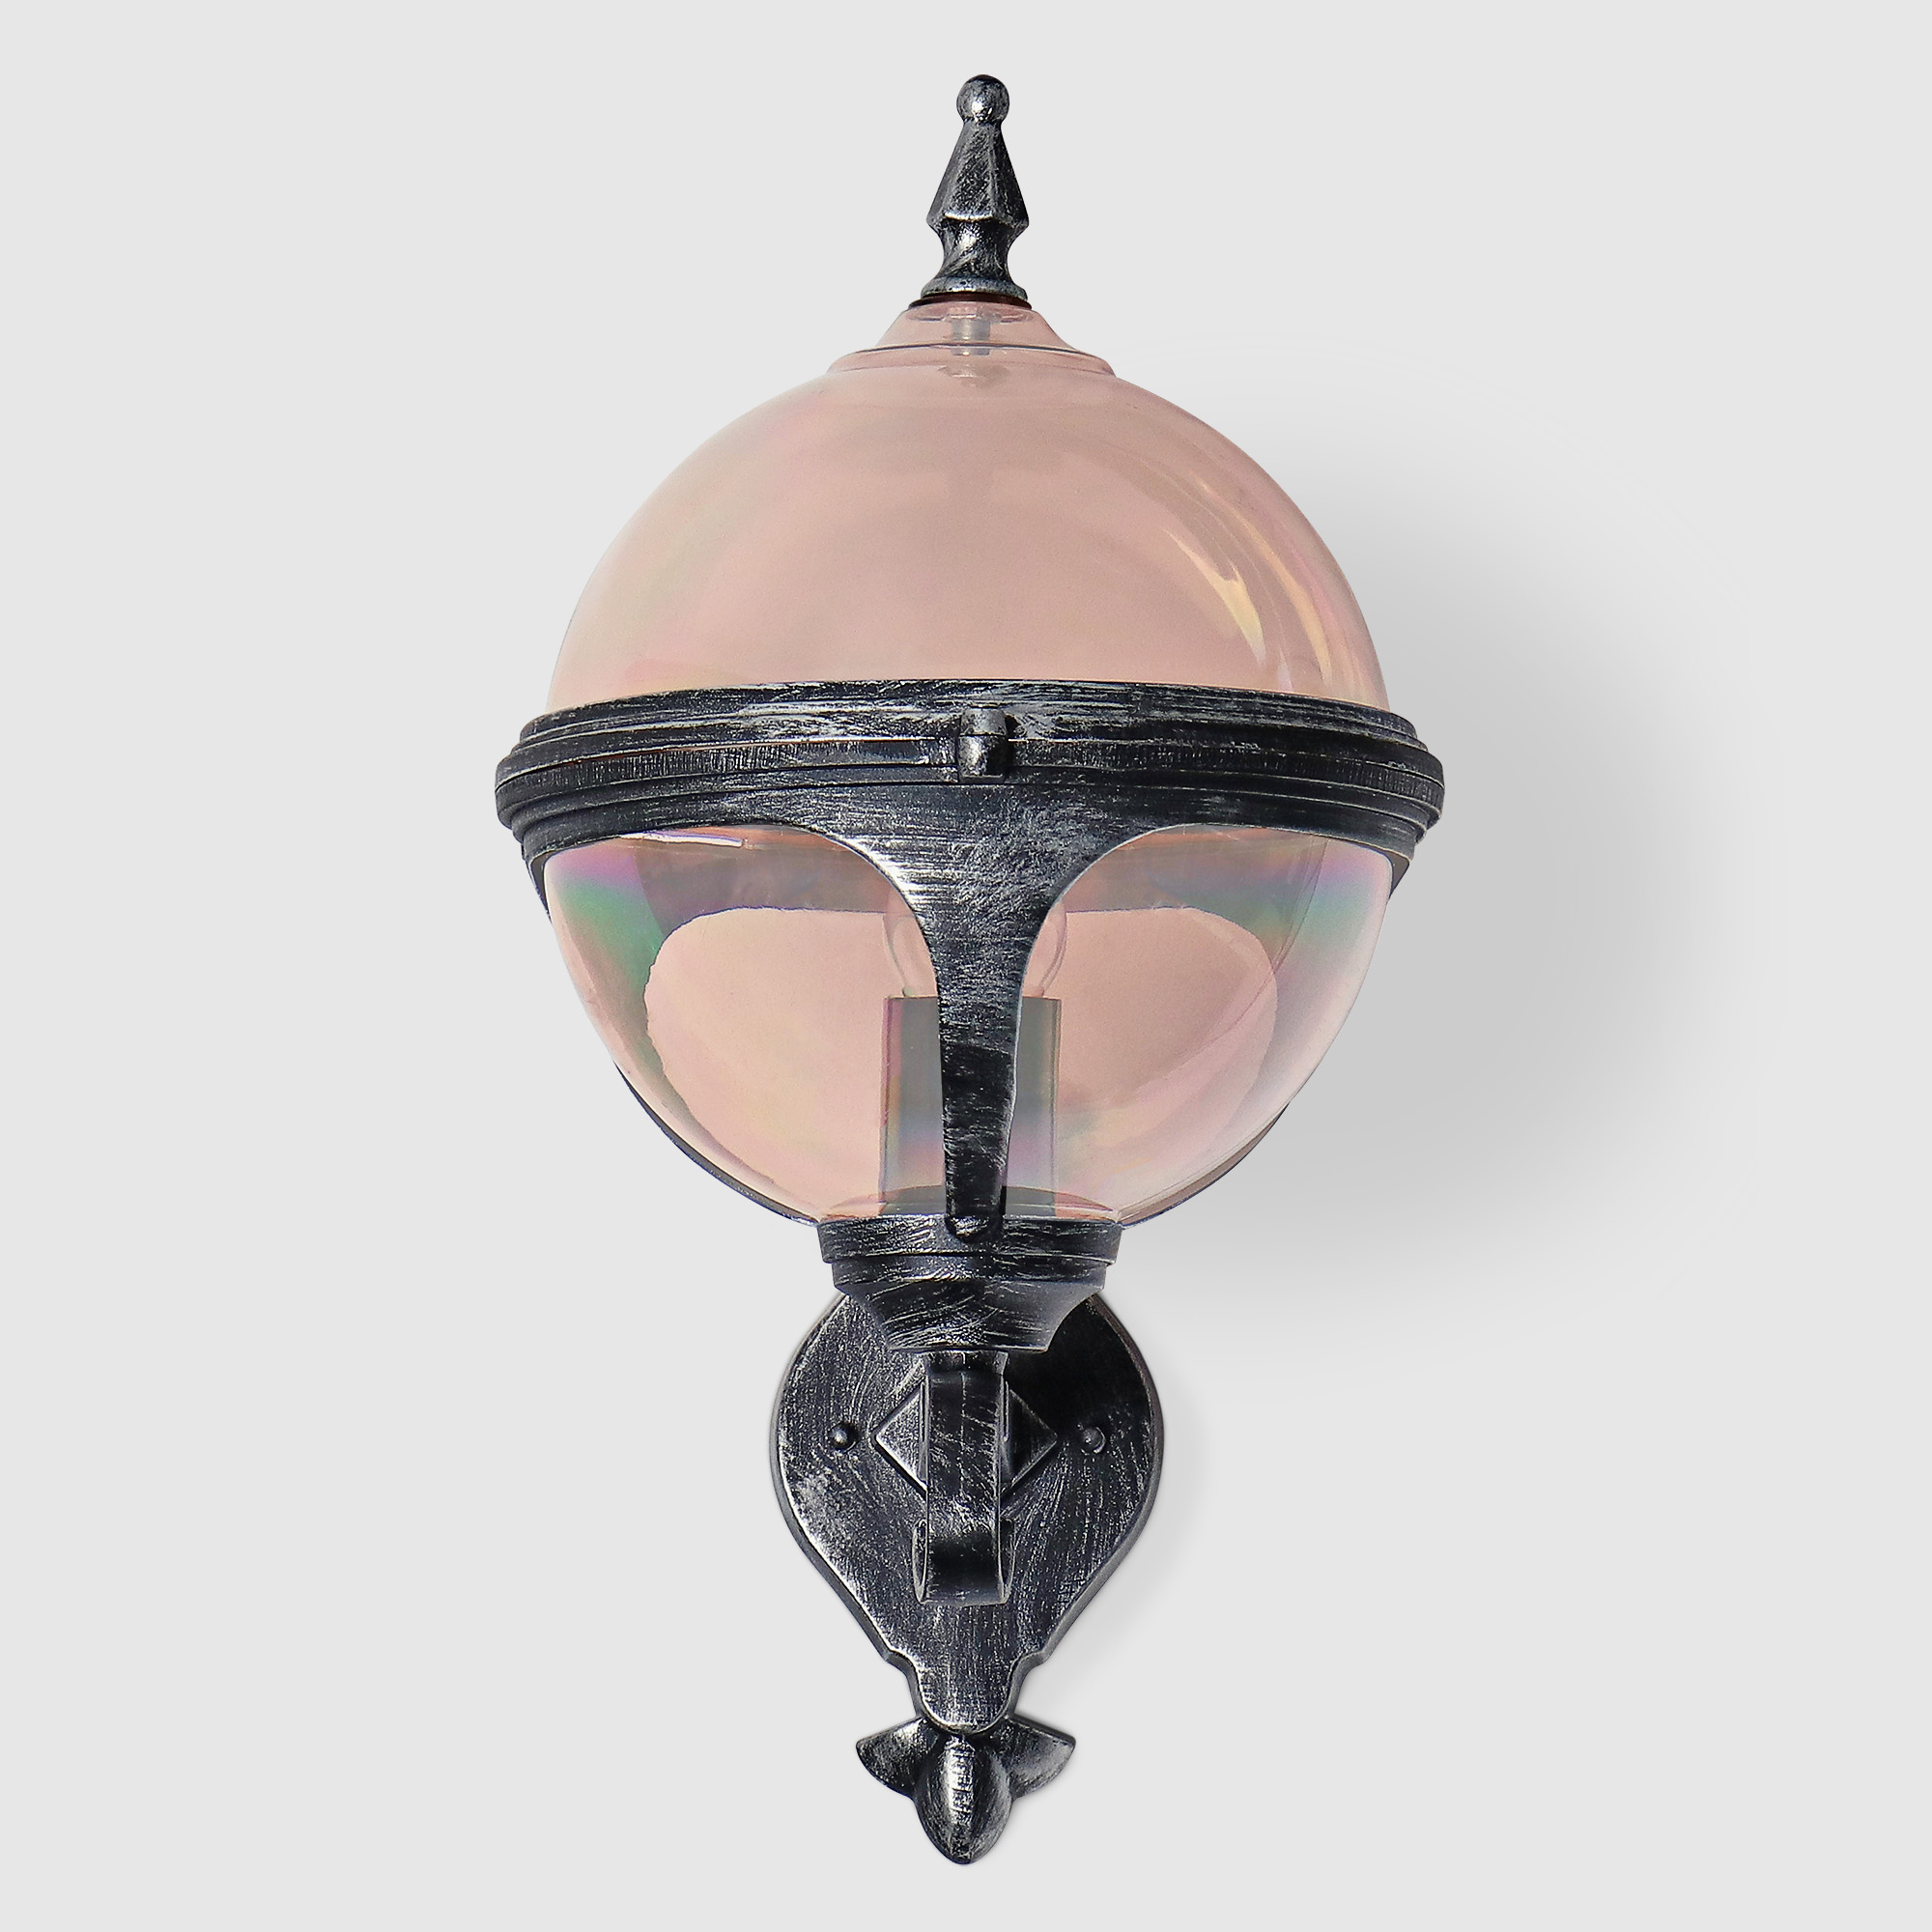 Светильник настенный Amber Lamp 8262B садовый, черное серебро, цвет шампань - фото 2